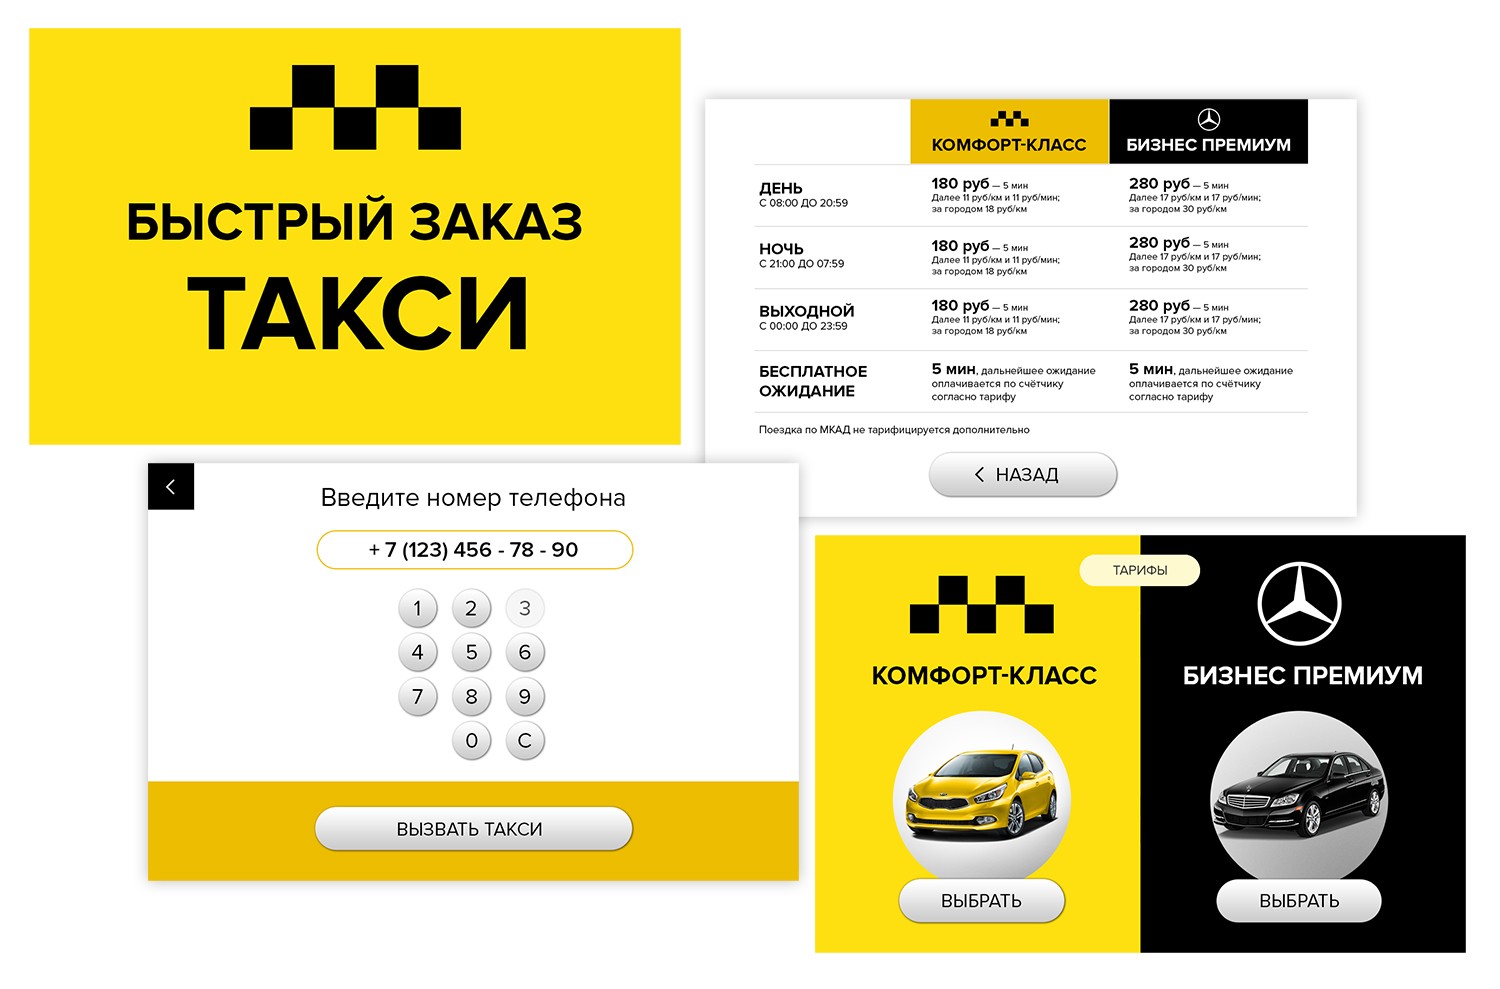 Такси в праге, средняя стоимость, советы и меры предосторожности